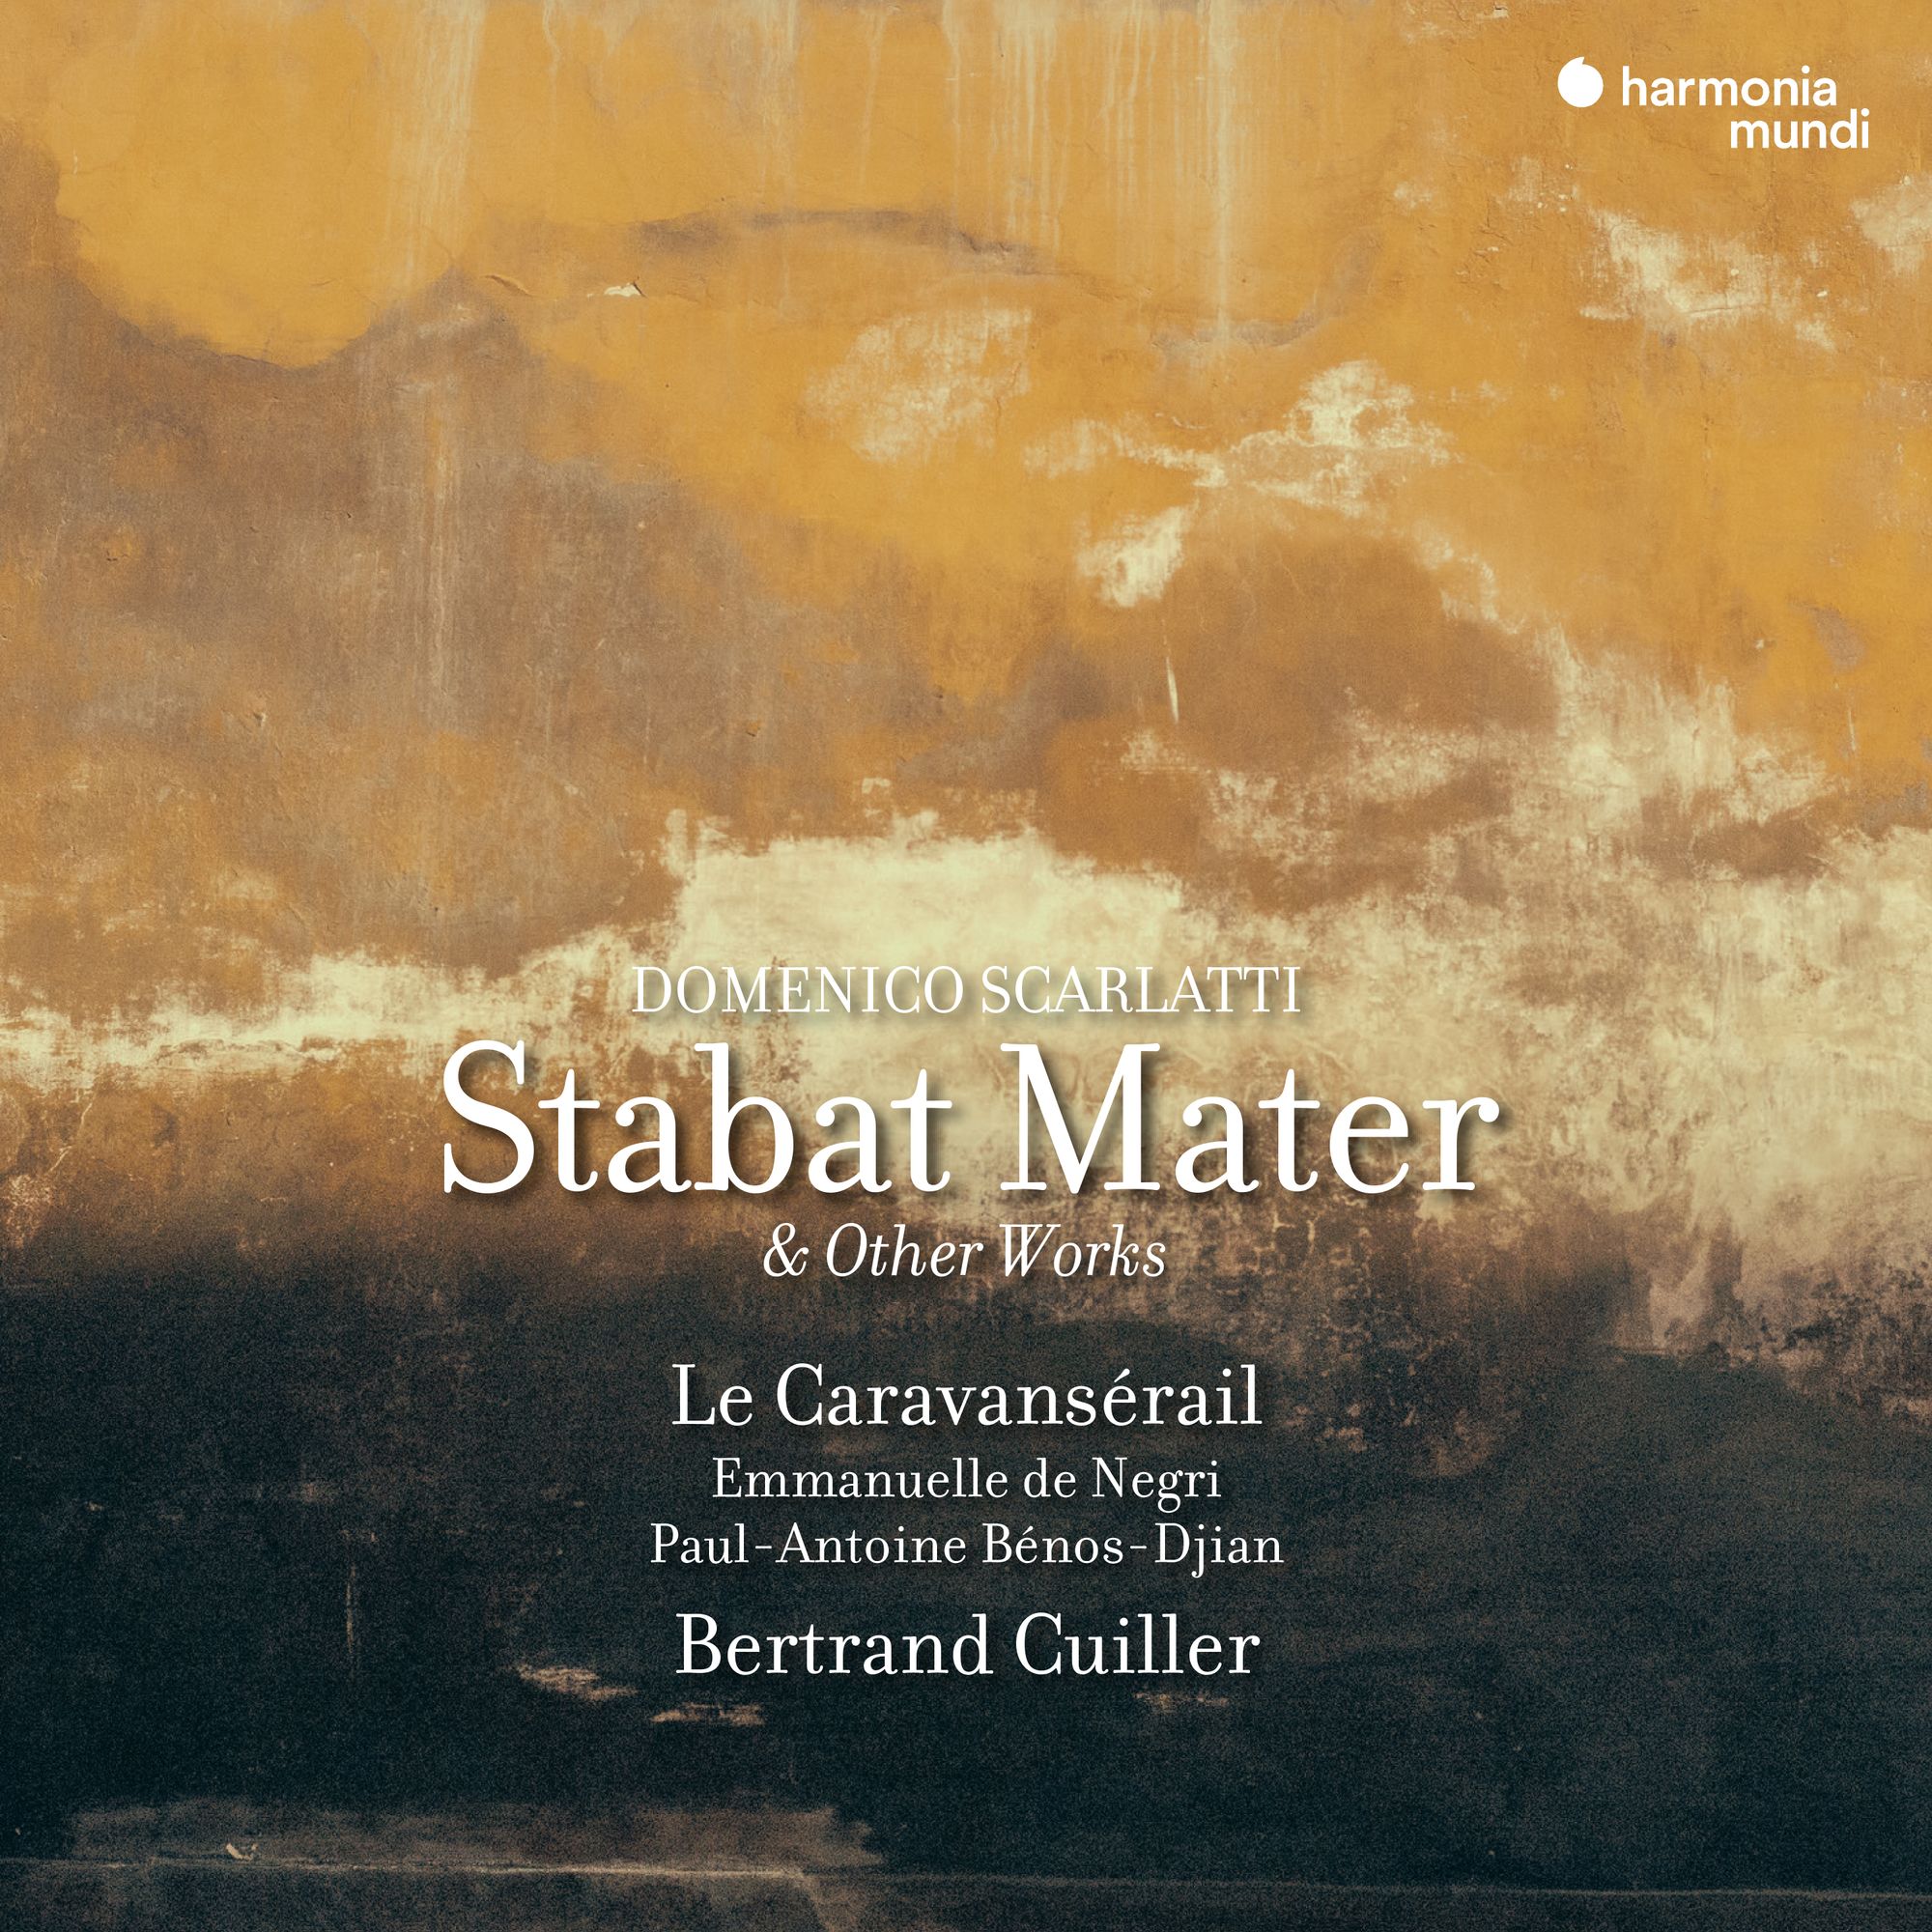 Domenico Scarlatti's Stabat Mater: And Much More!